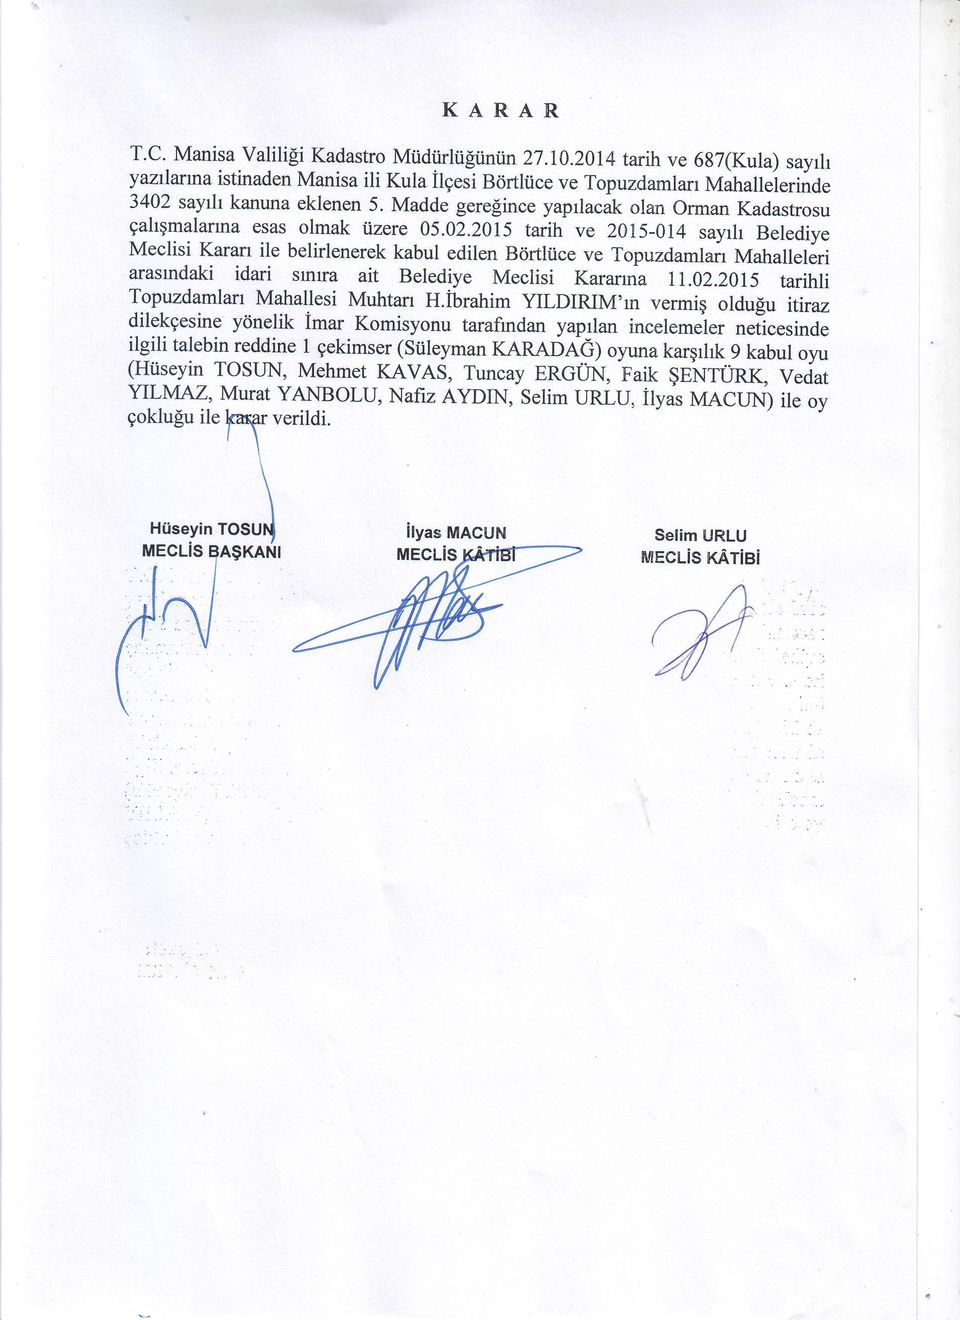 2015 tarih ve 2015-014 sayrh Belediye Meclisi Karan ile belirlenerek kabul edilen Bortltice ve Topuzdamlair Mahalleleri arasrndaki idari srnra ait Belediye Meciisi Karanna 11.02.